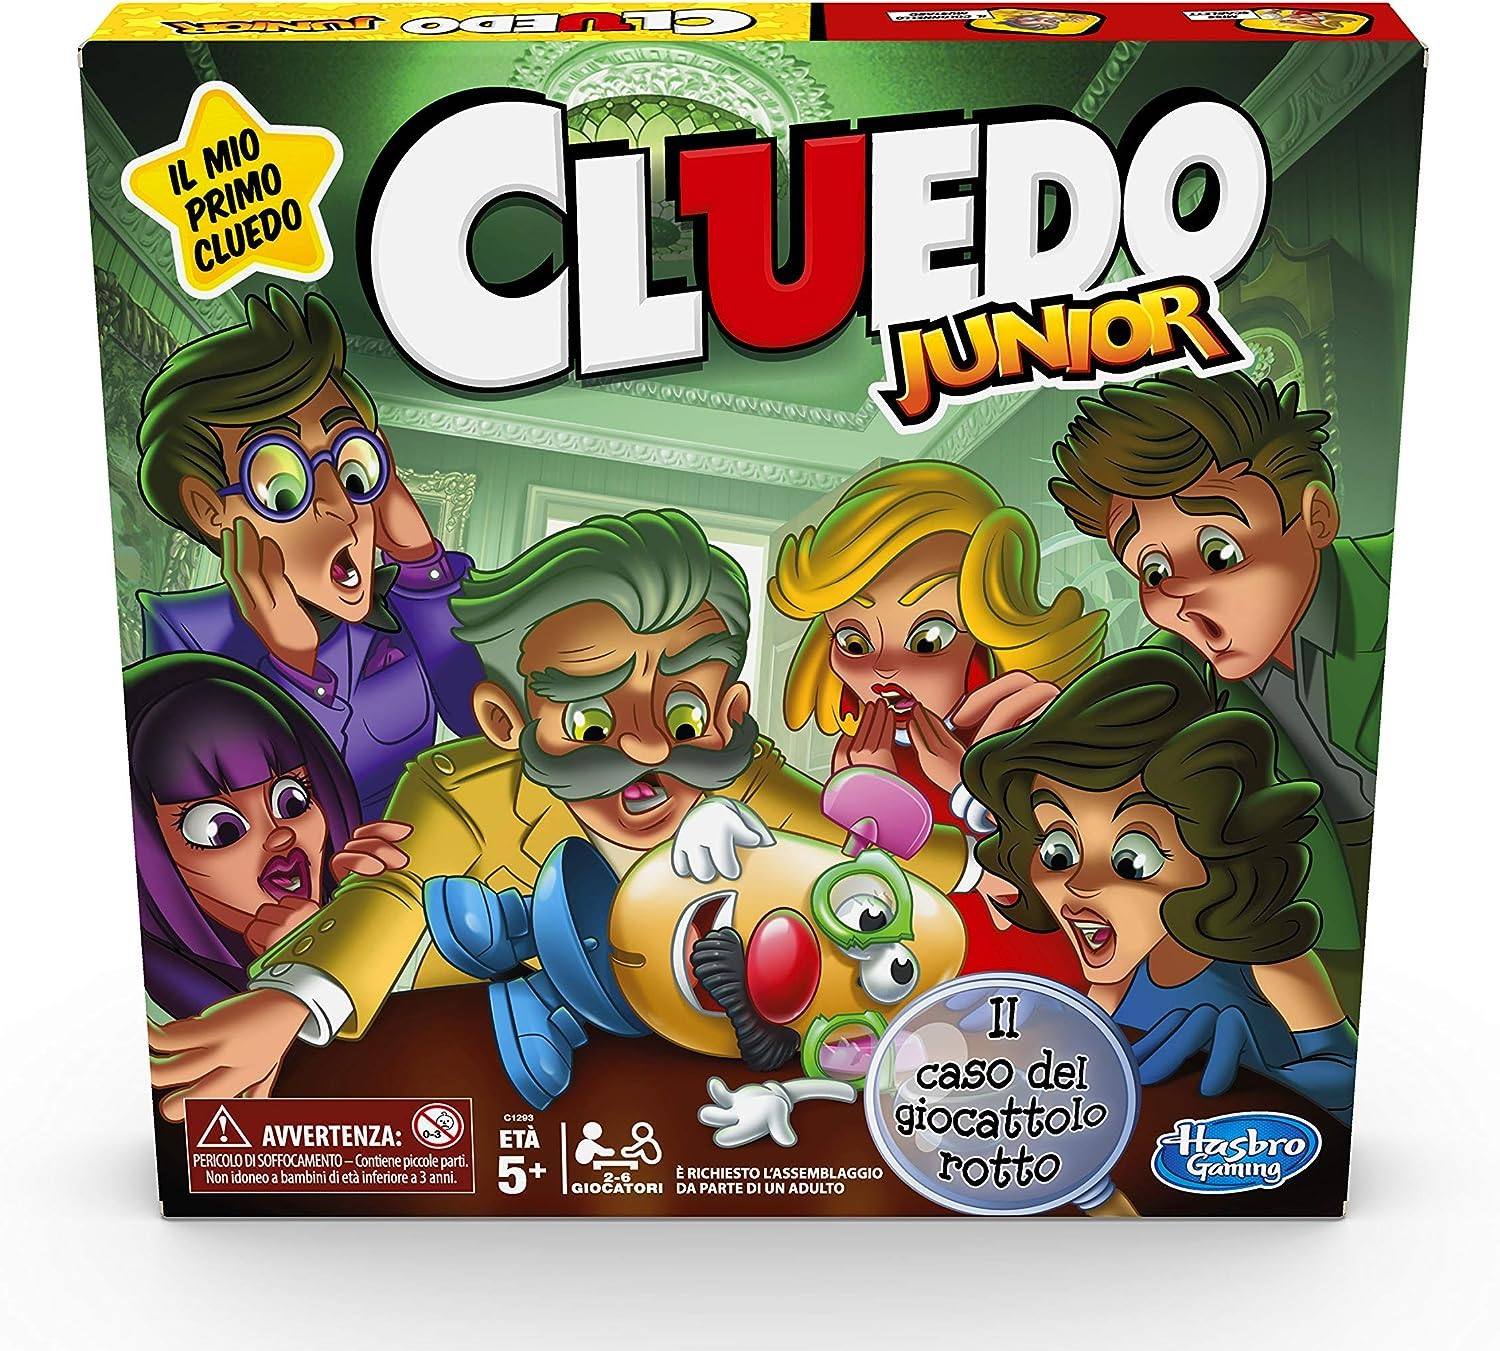 Monopoly - Il Mio Primo, gioco da tavolo per famiglie, per bambini dai 4  anni in su